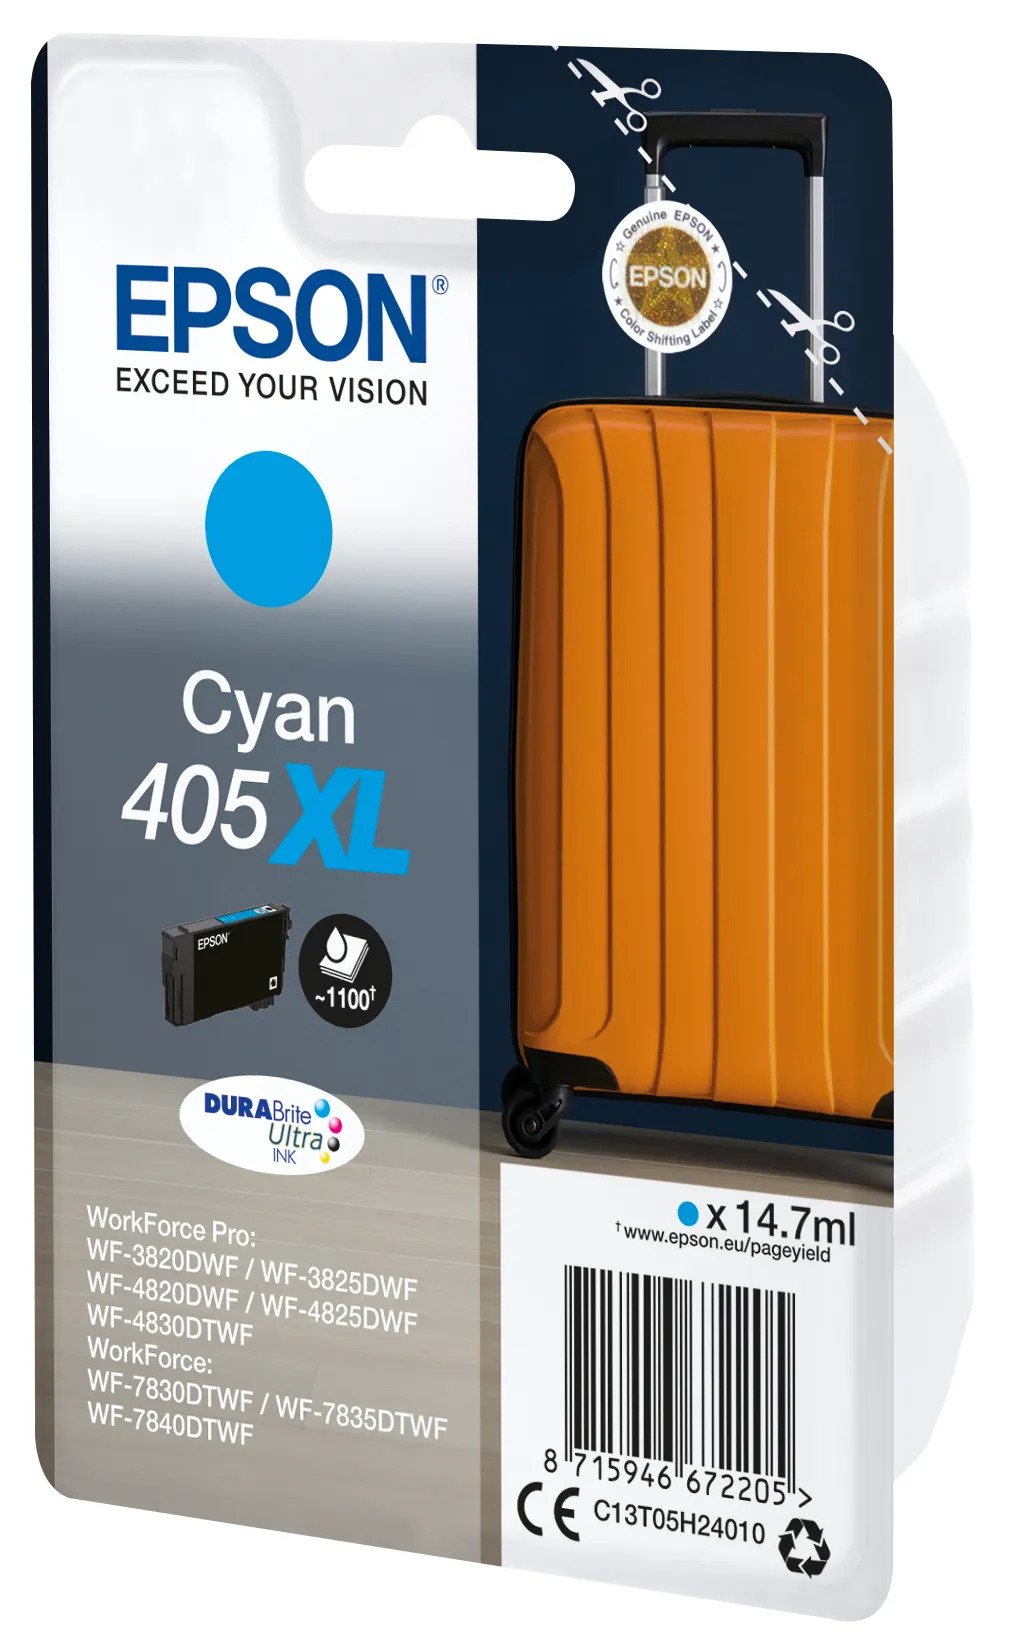 Achat Epson Singlepack Cyan 405XL DURABrite Ultra Ink sur hello RSE - visuel 3